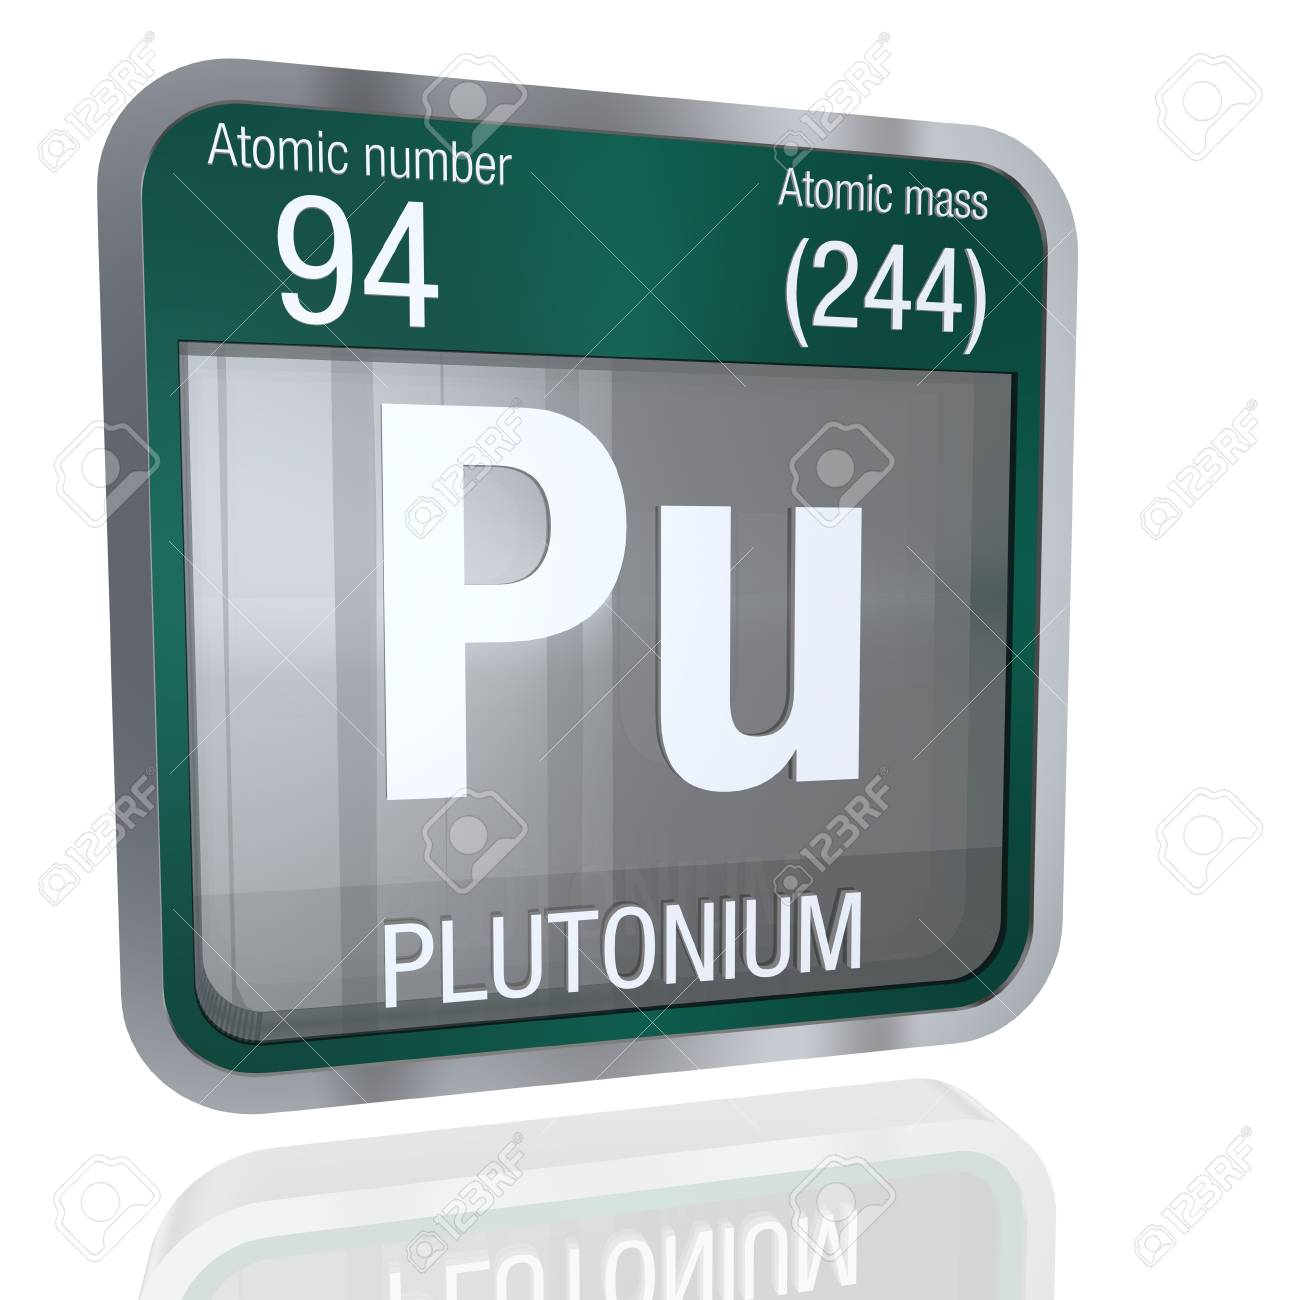 Plutonium Symbol In Square Shape With Metallic Border And